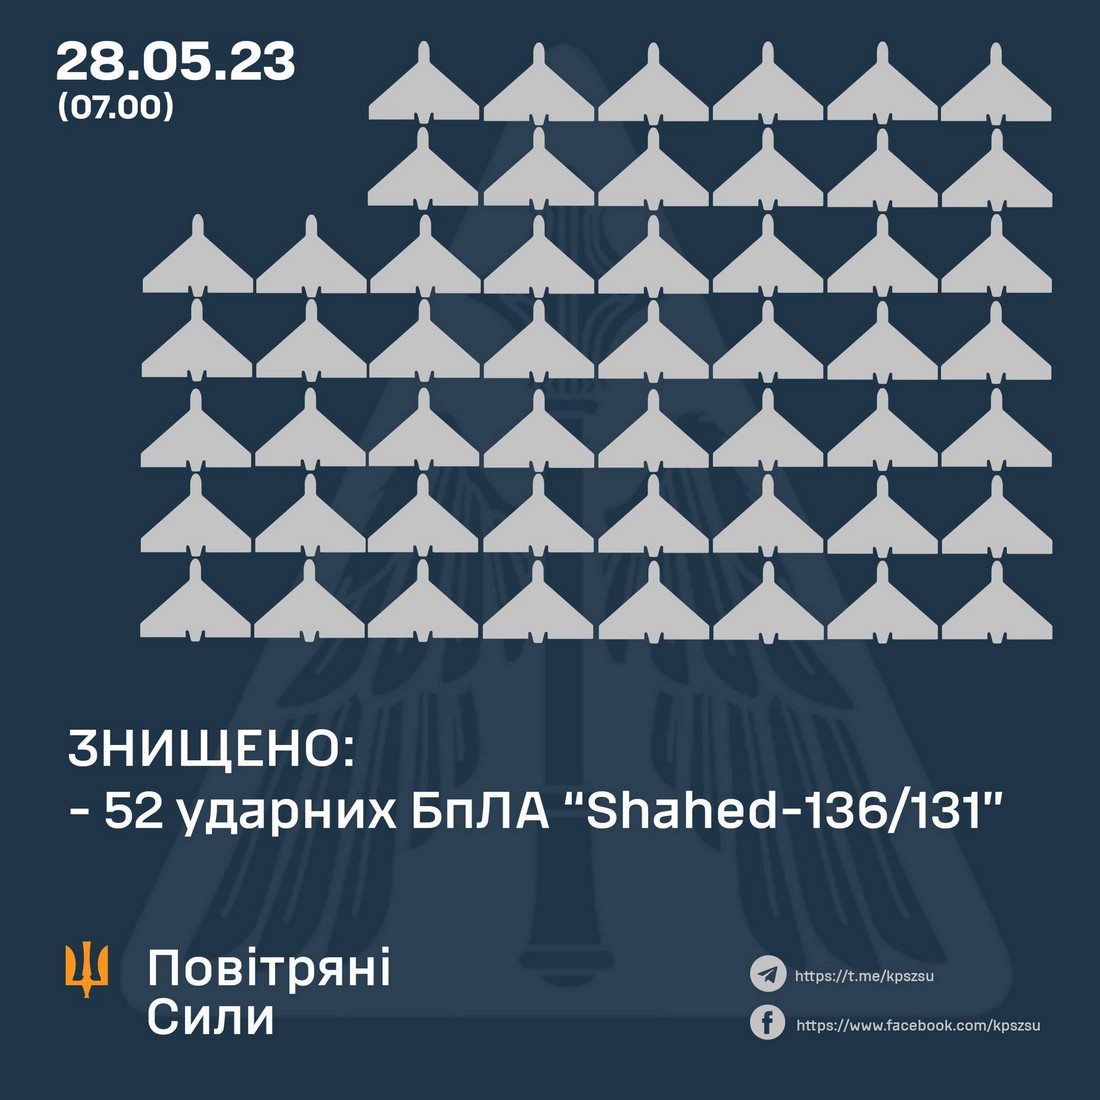 Інформація від Повітряних сил про атаку 28 травня